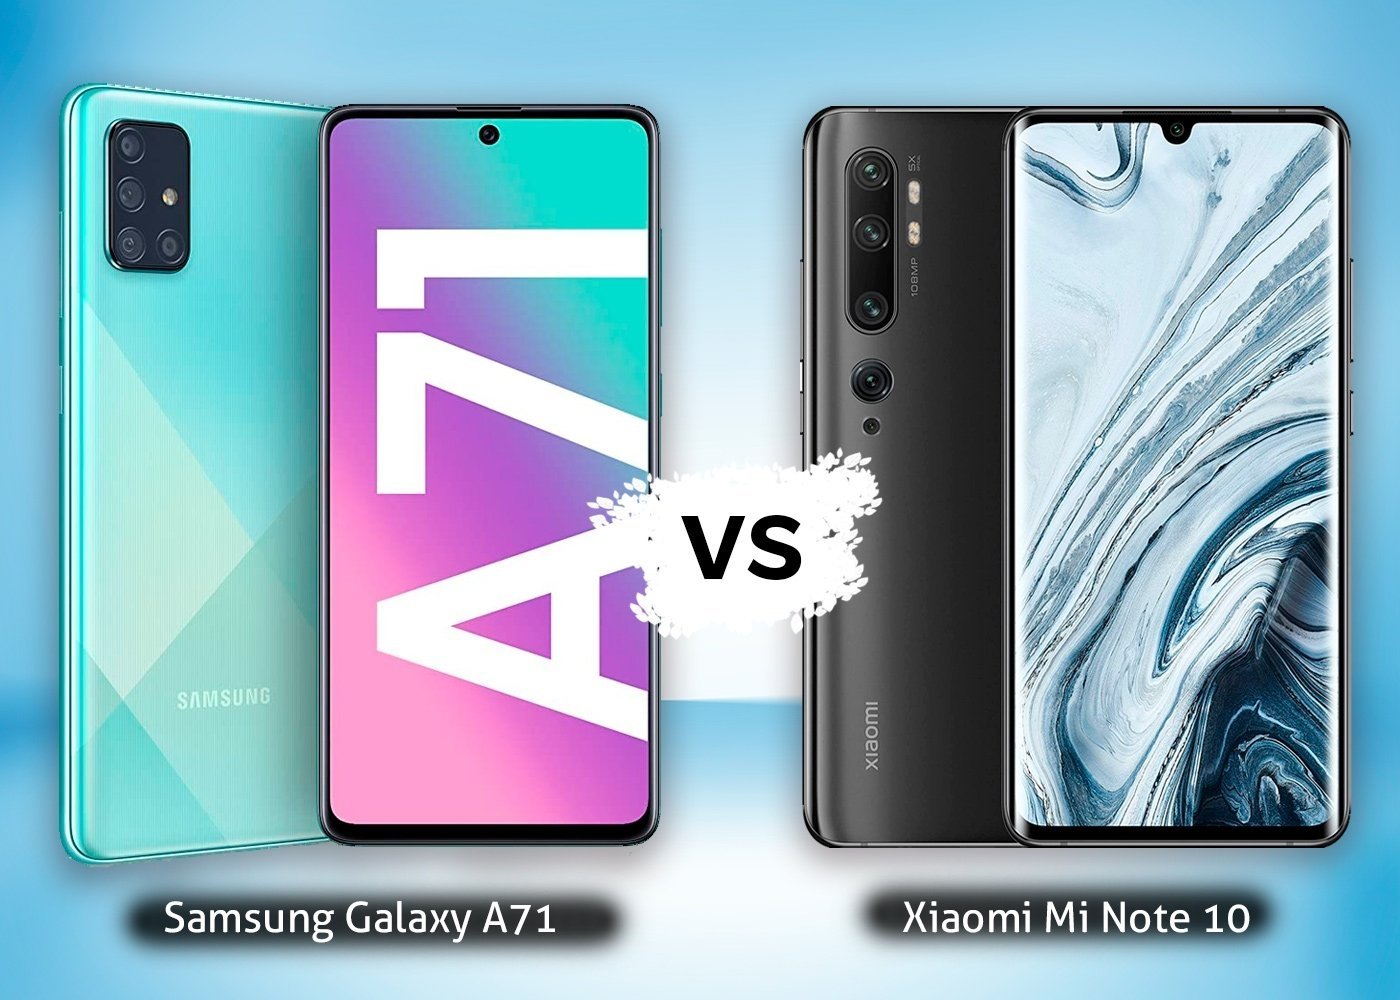 Samsung Galaxy A71 vs Xiaomi Mi Note 10, comparison